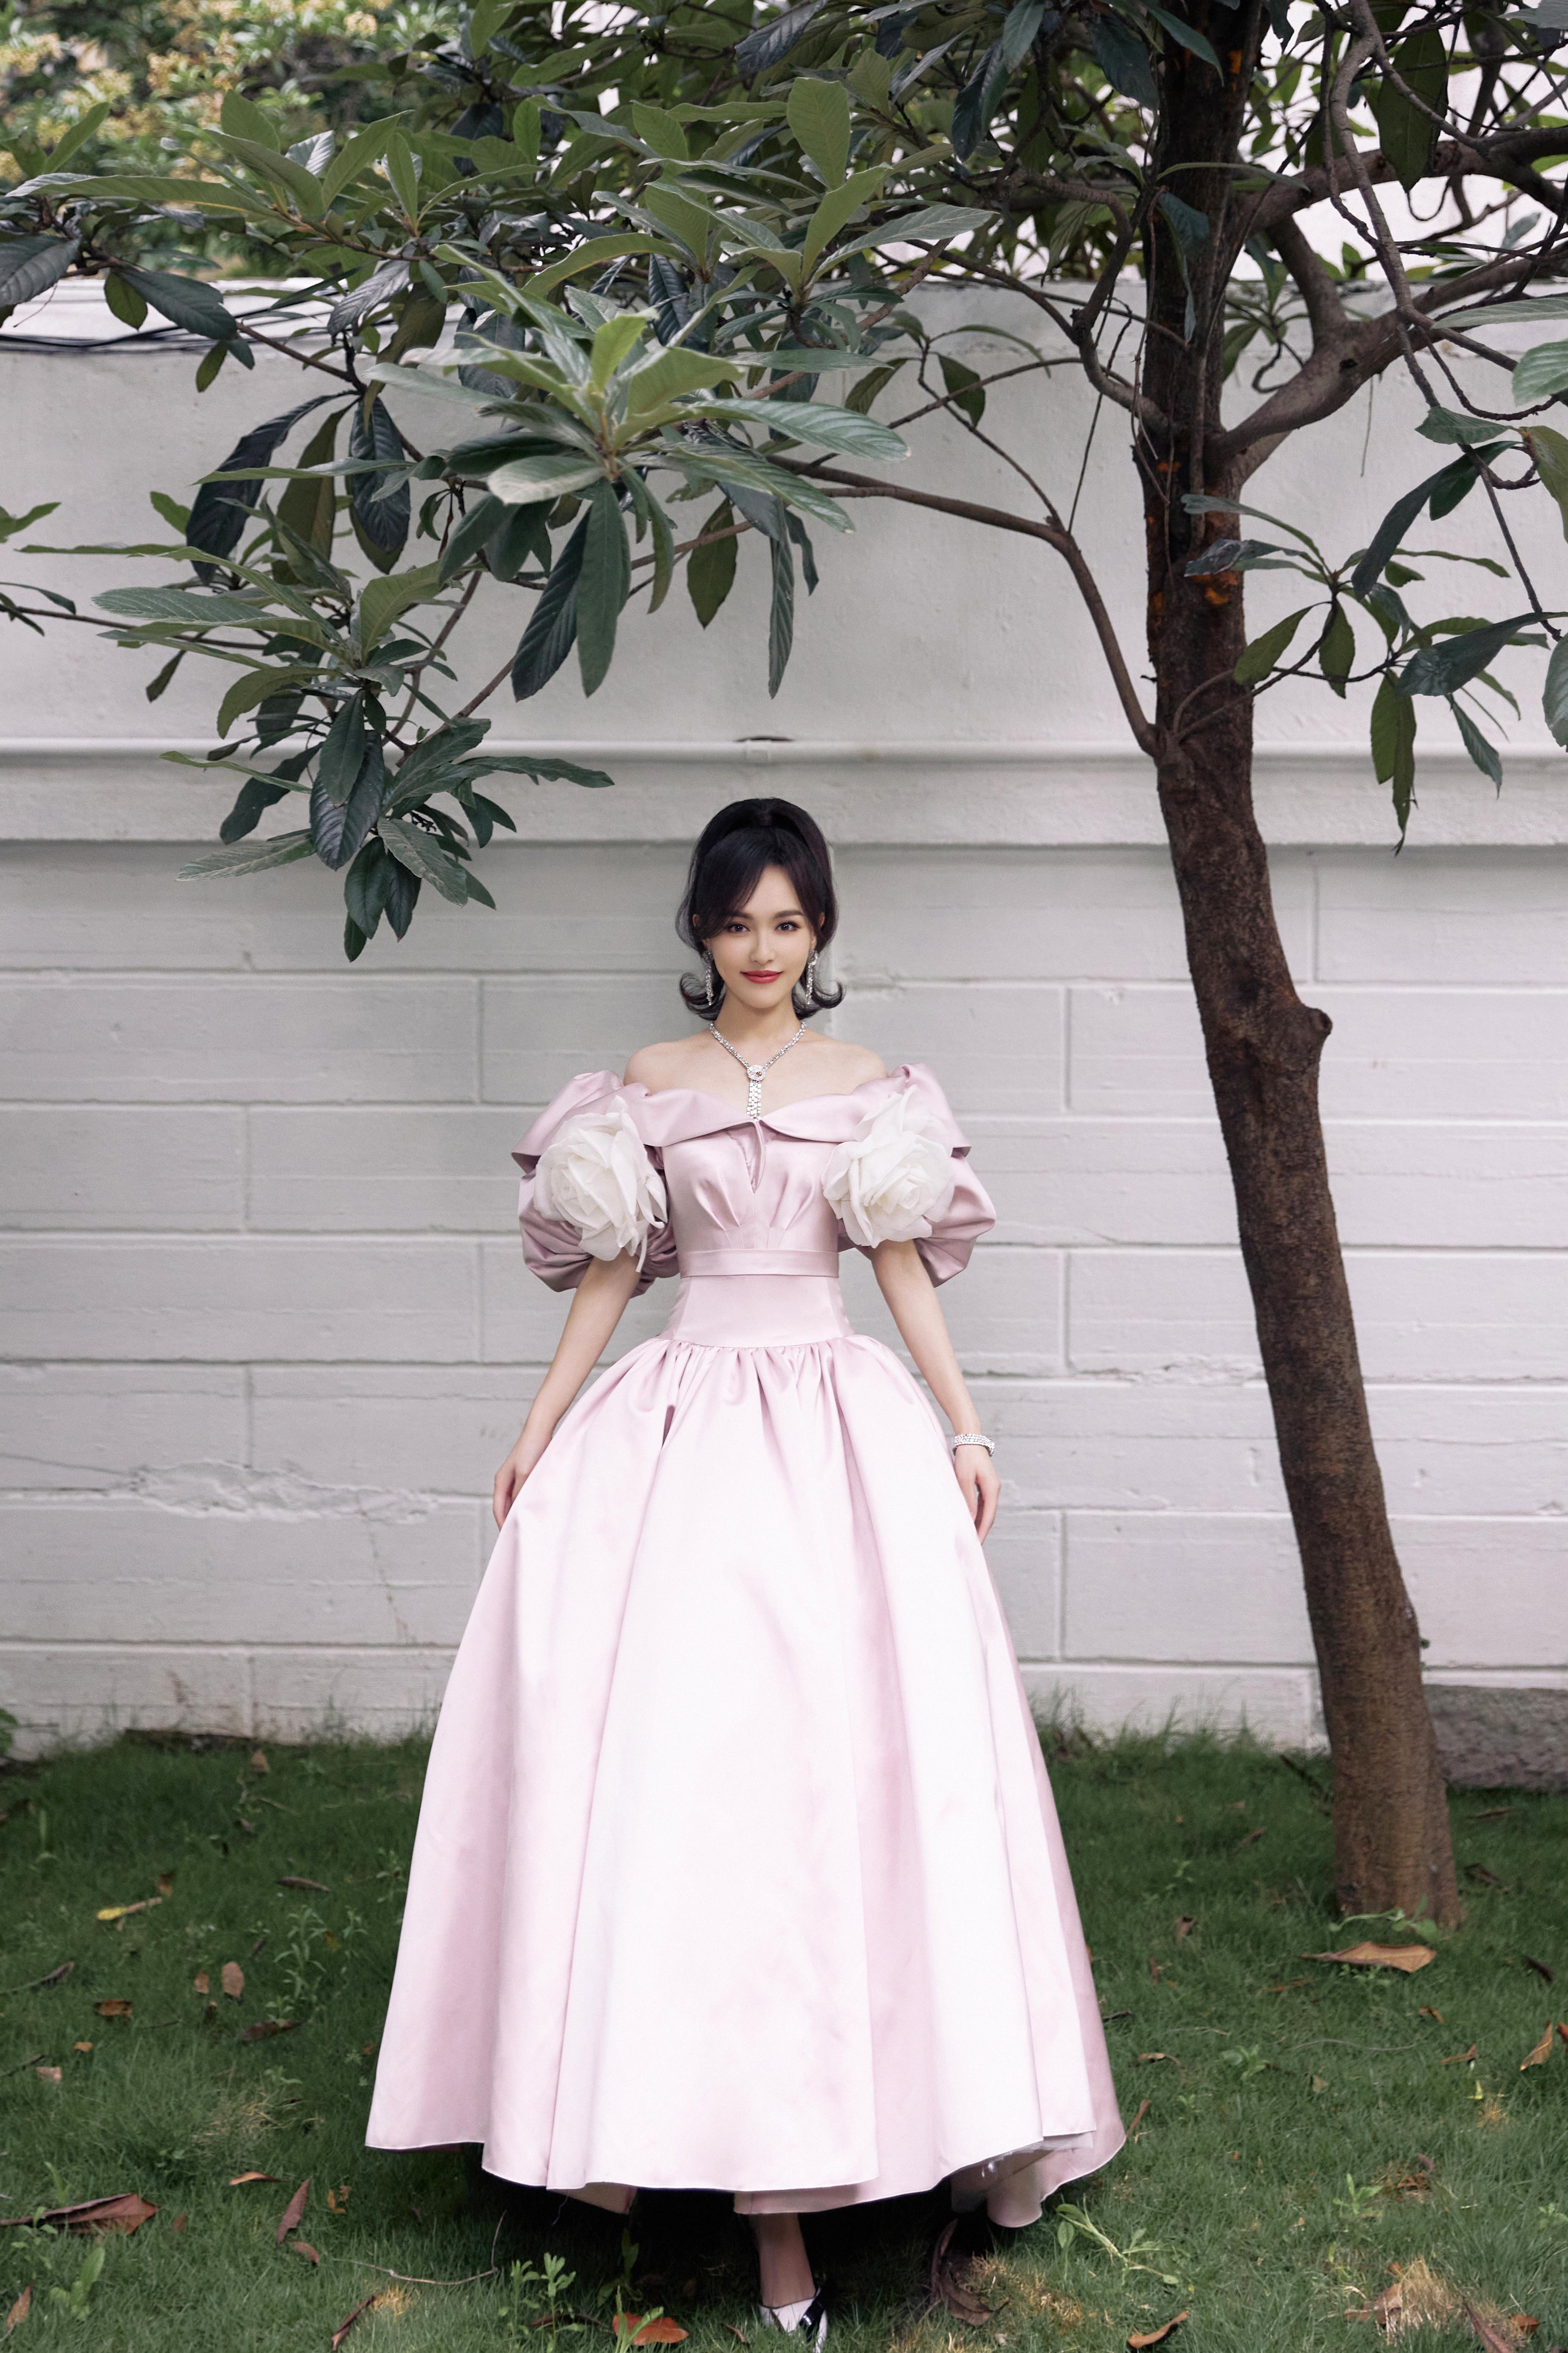 唐嫣粉色束腰裙造型复古优雅 白色大花朵点缀温柔甜美,1 (1)